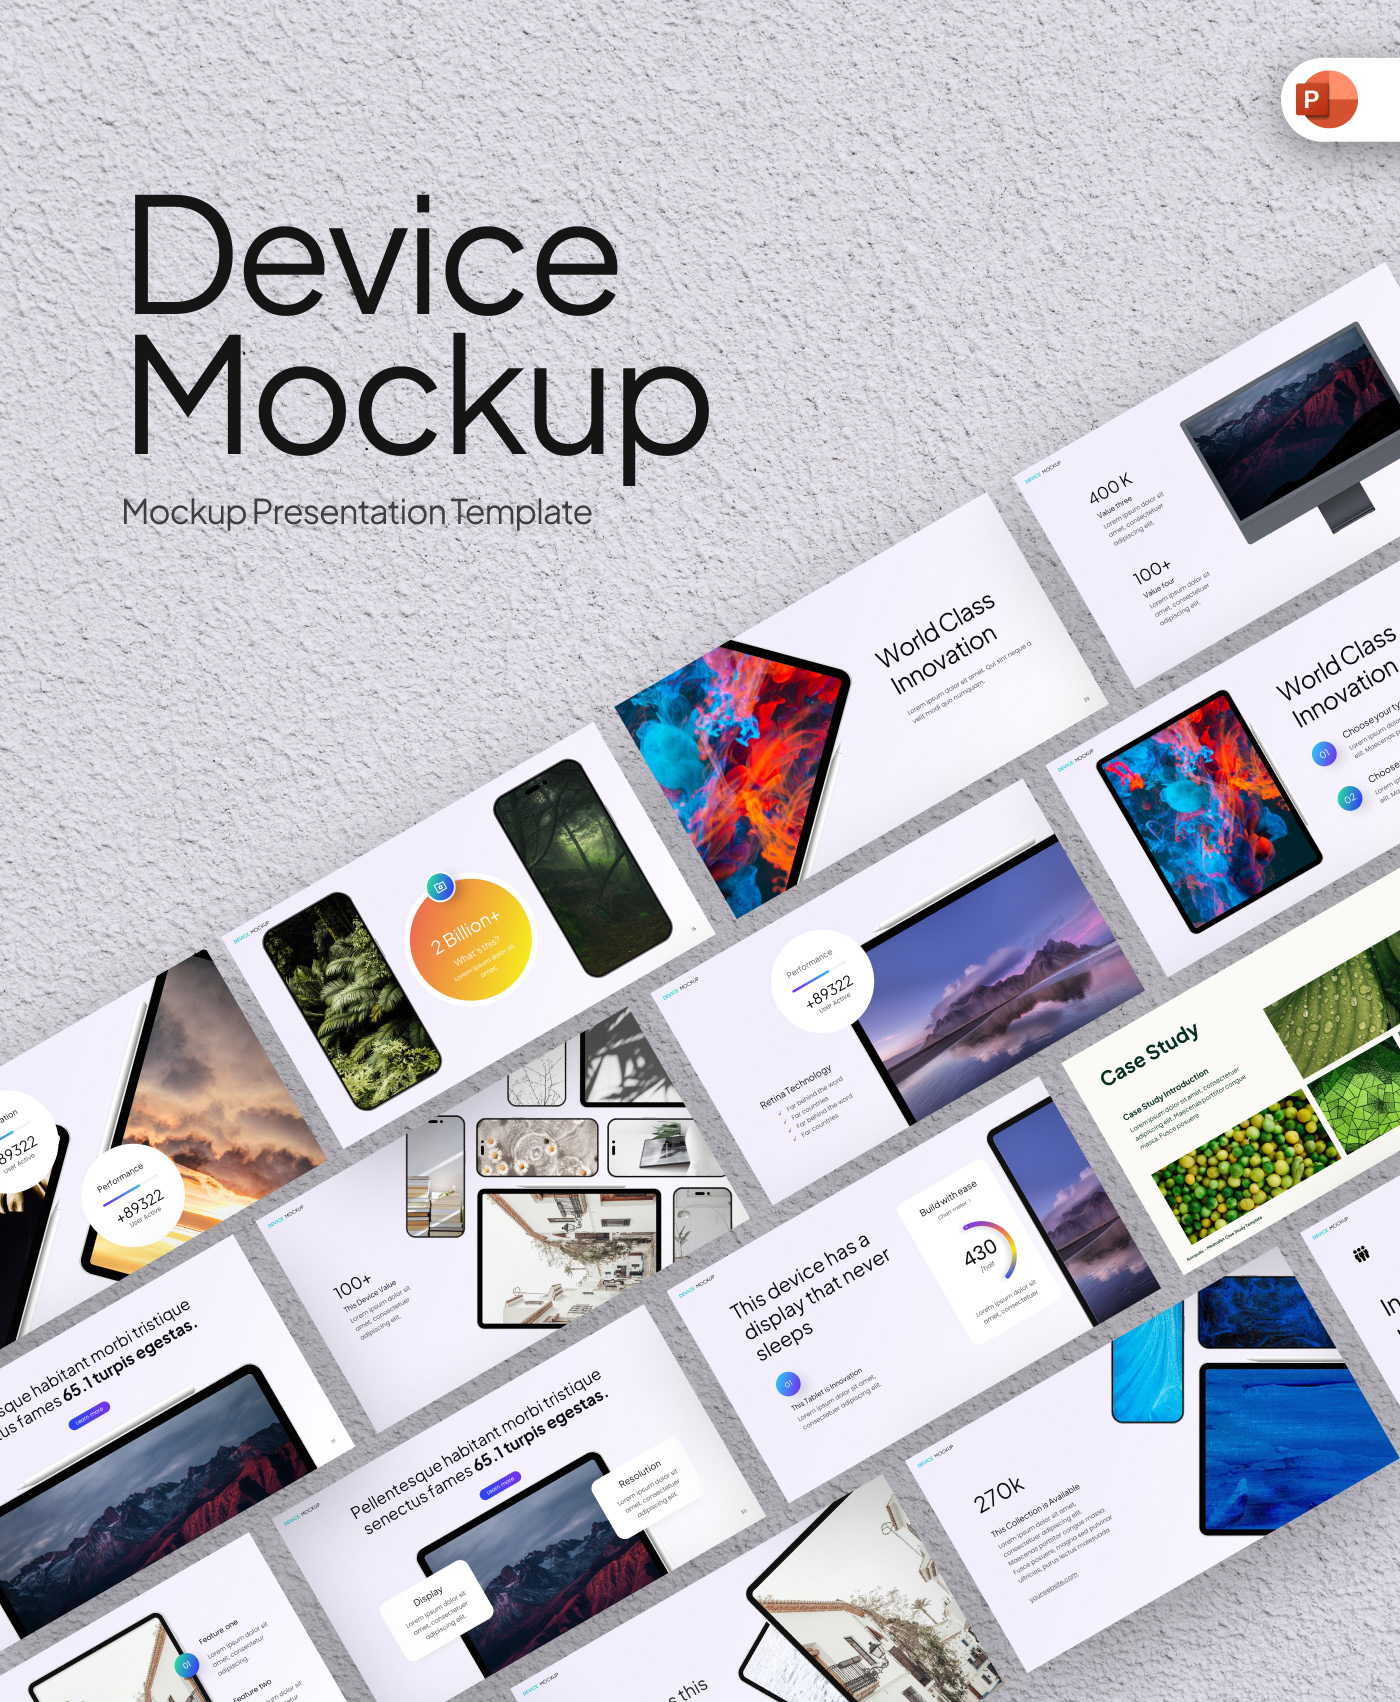 design presentation Mockup devices Responsive UI/UX assets pitch deck presentation design graphic design 